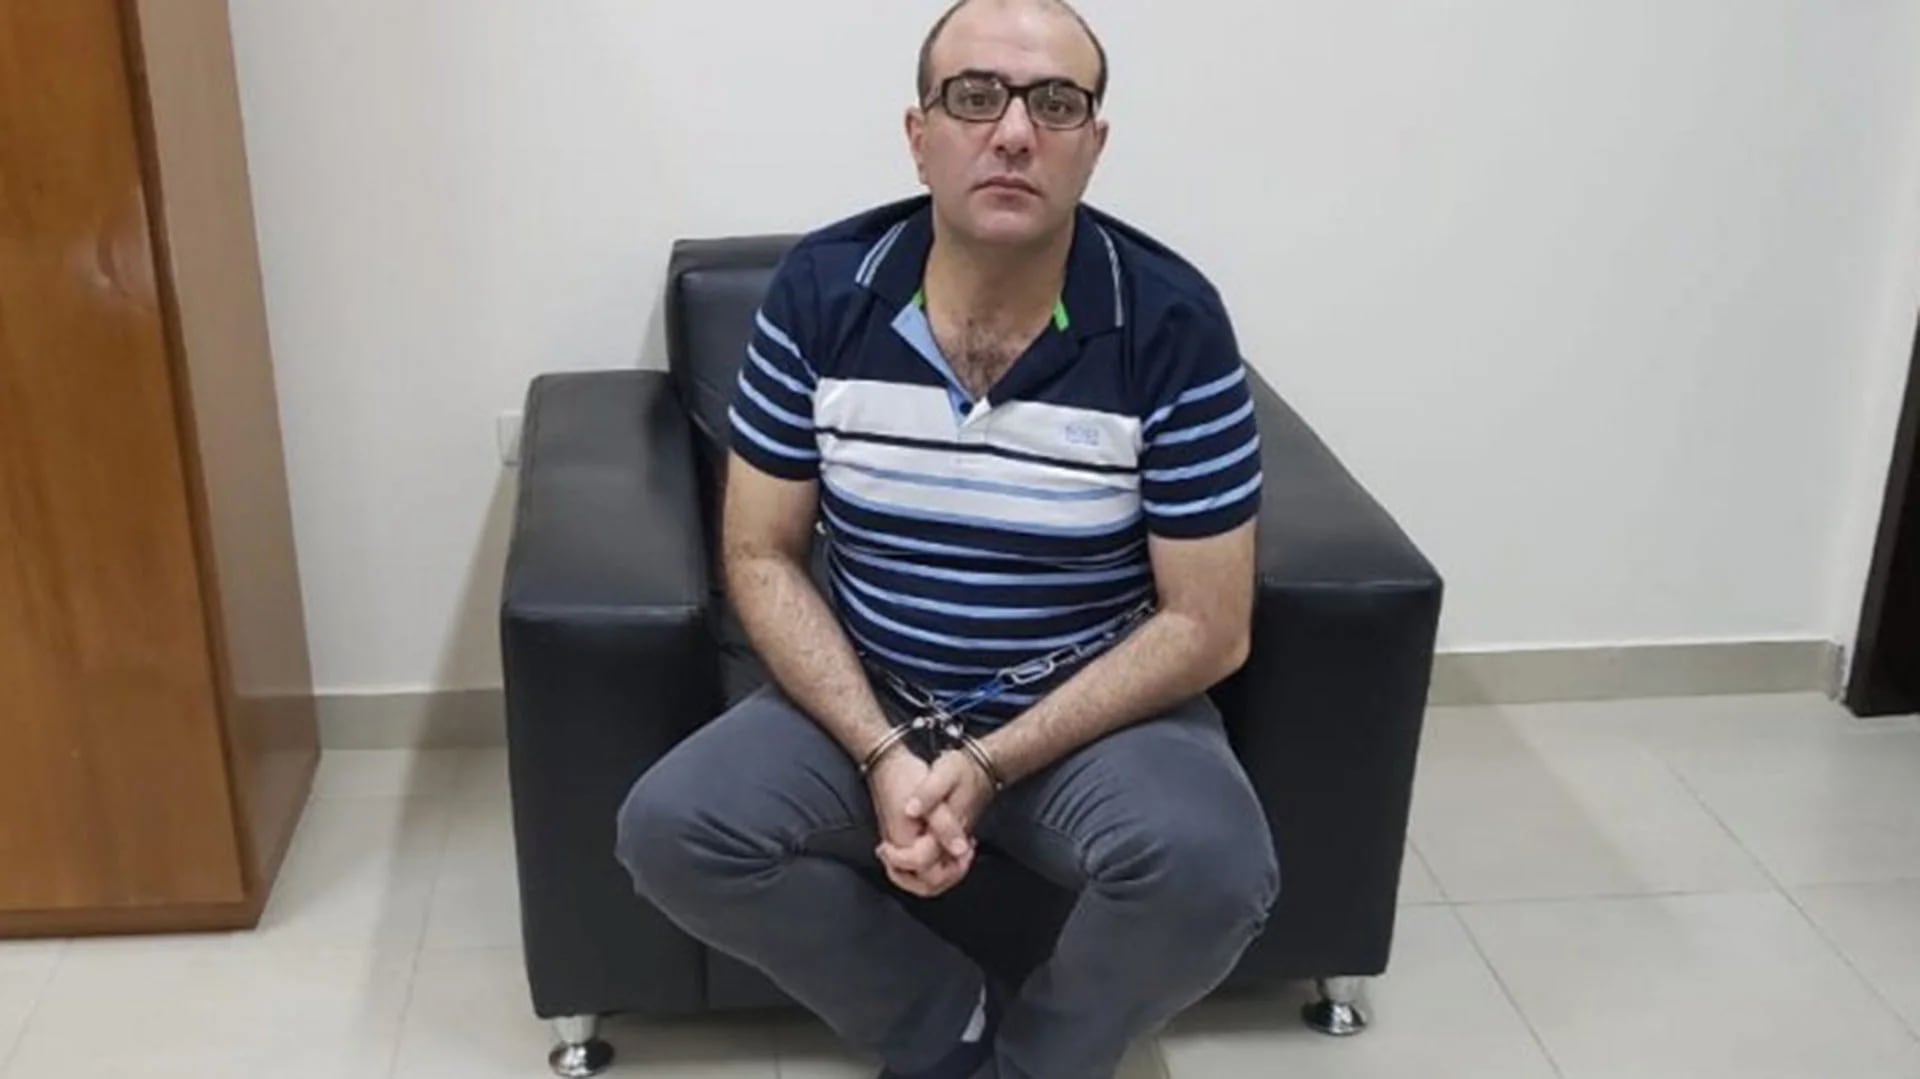 Mahmoud Ali Barakat, extraditado en noviembre pasado a Estados Unidos donde se lo juzgará por lavar dinero del narcotráfico y transferir el dinero a una cuenta del Caribe relacionada con Hezbollah (Ministerio Público de Paraguay)